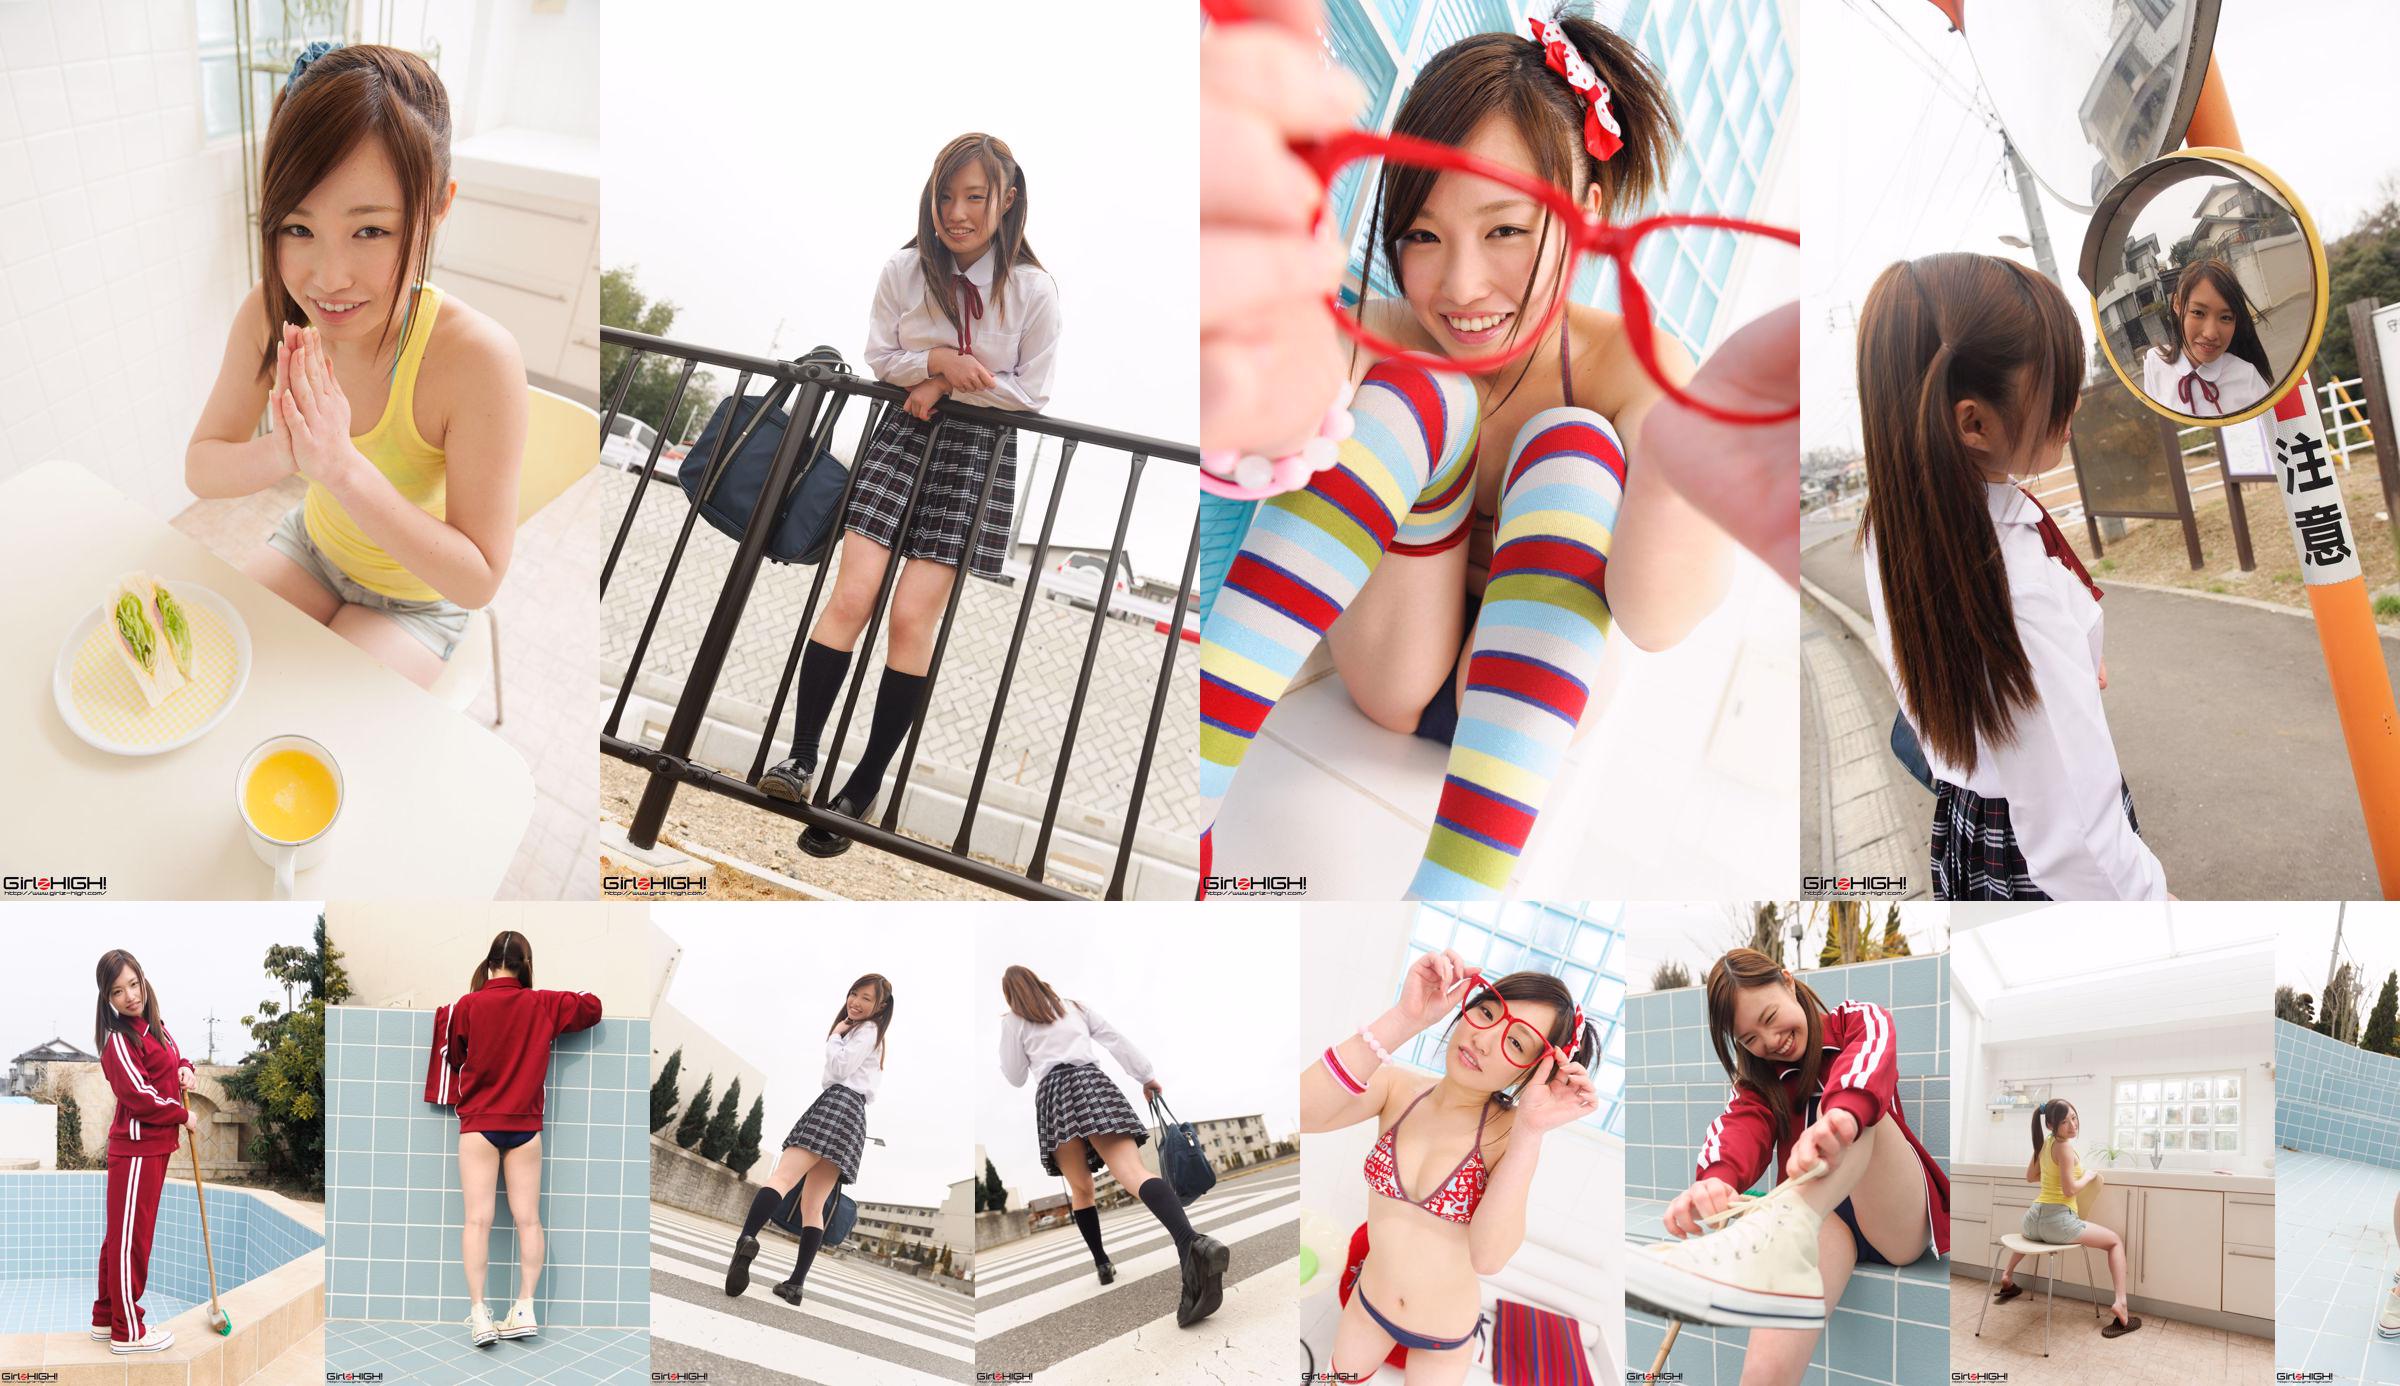 [Girlz-High] Yuno Natsuki Yuno Natsuki / Yuno Natsuki Gravure Gallery --g023 Photoset 02 No.4d1a42 第3頁